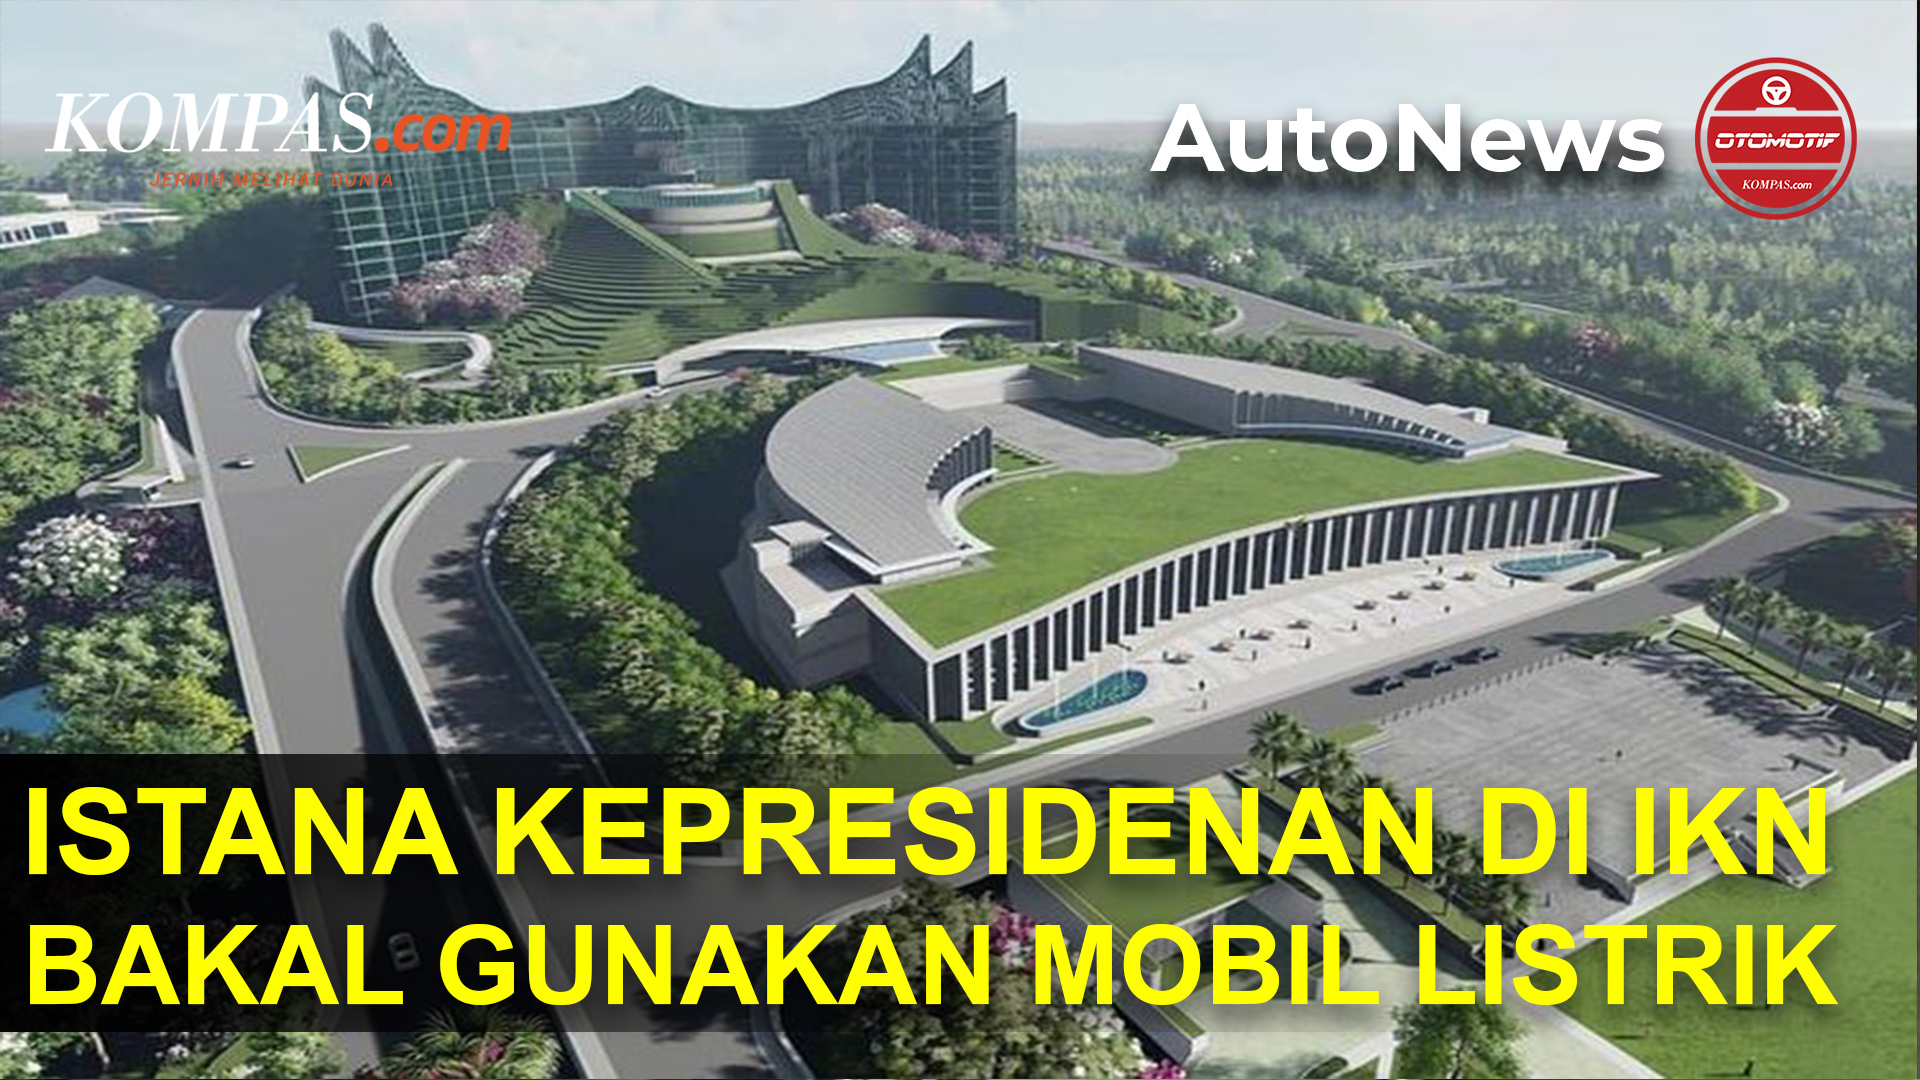 Mobil Listrik Bakal Jadi Mobil Istana Kepresidenan di Ibu Kota Negara Baru